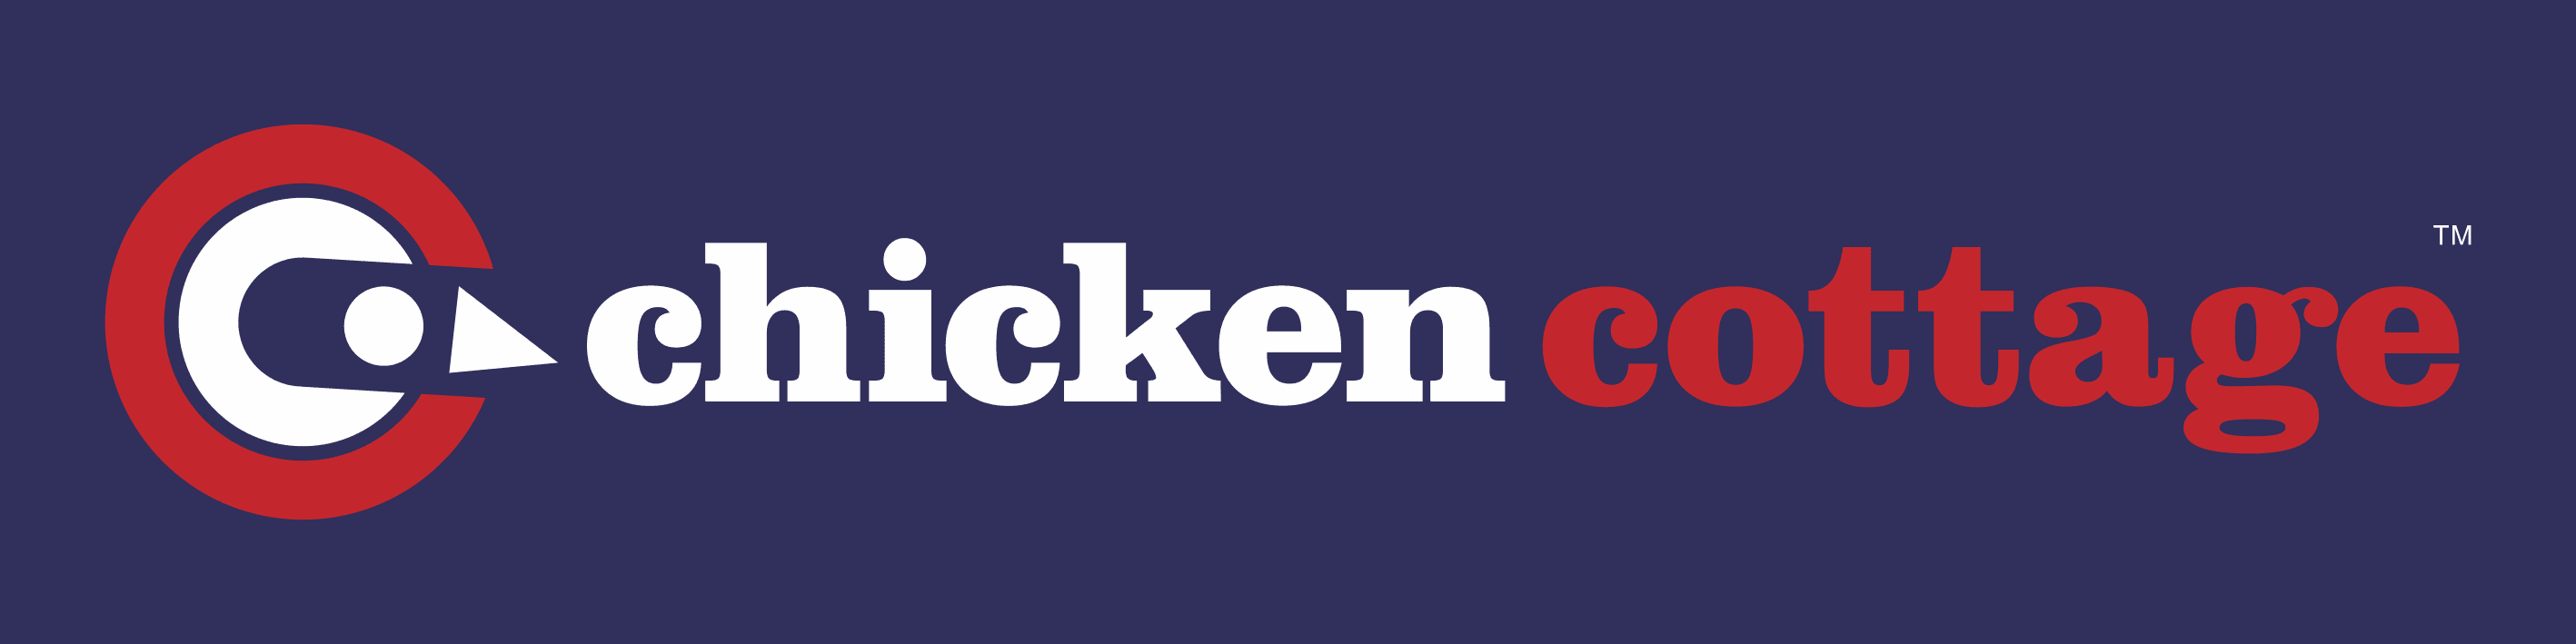 CHICKEN COTTAGE logo